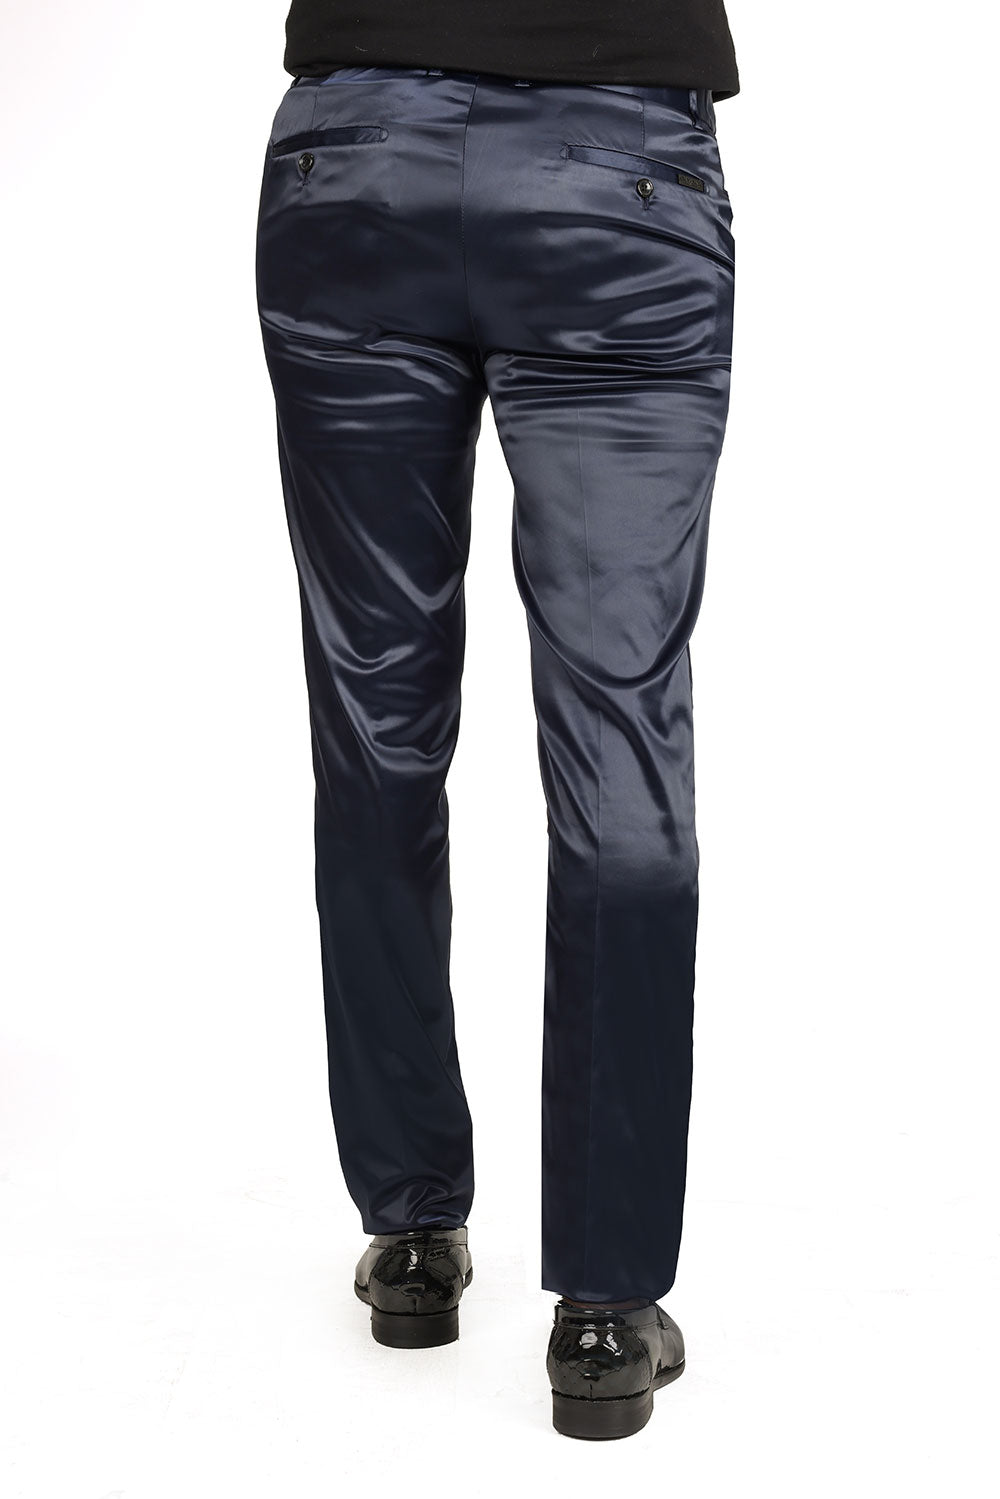 Trousers Shiny Leather Black women Men Clothing 3D Model $25 - .obj - Free3D